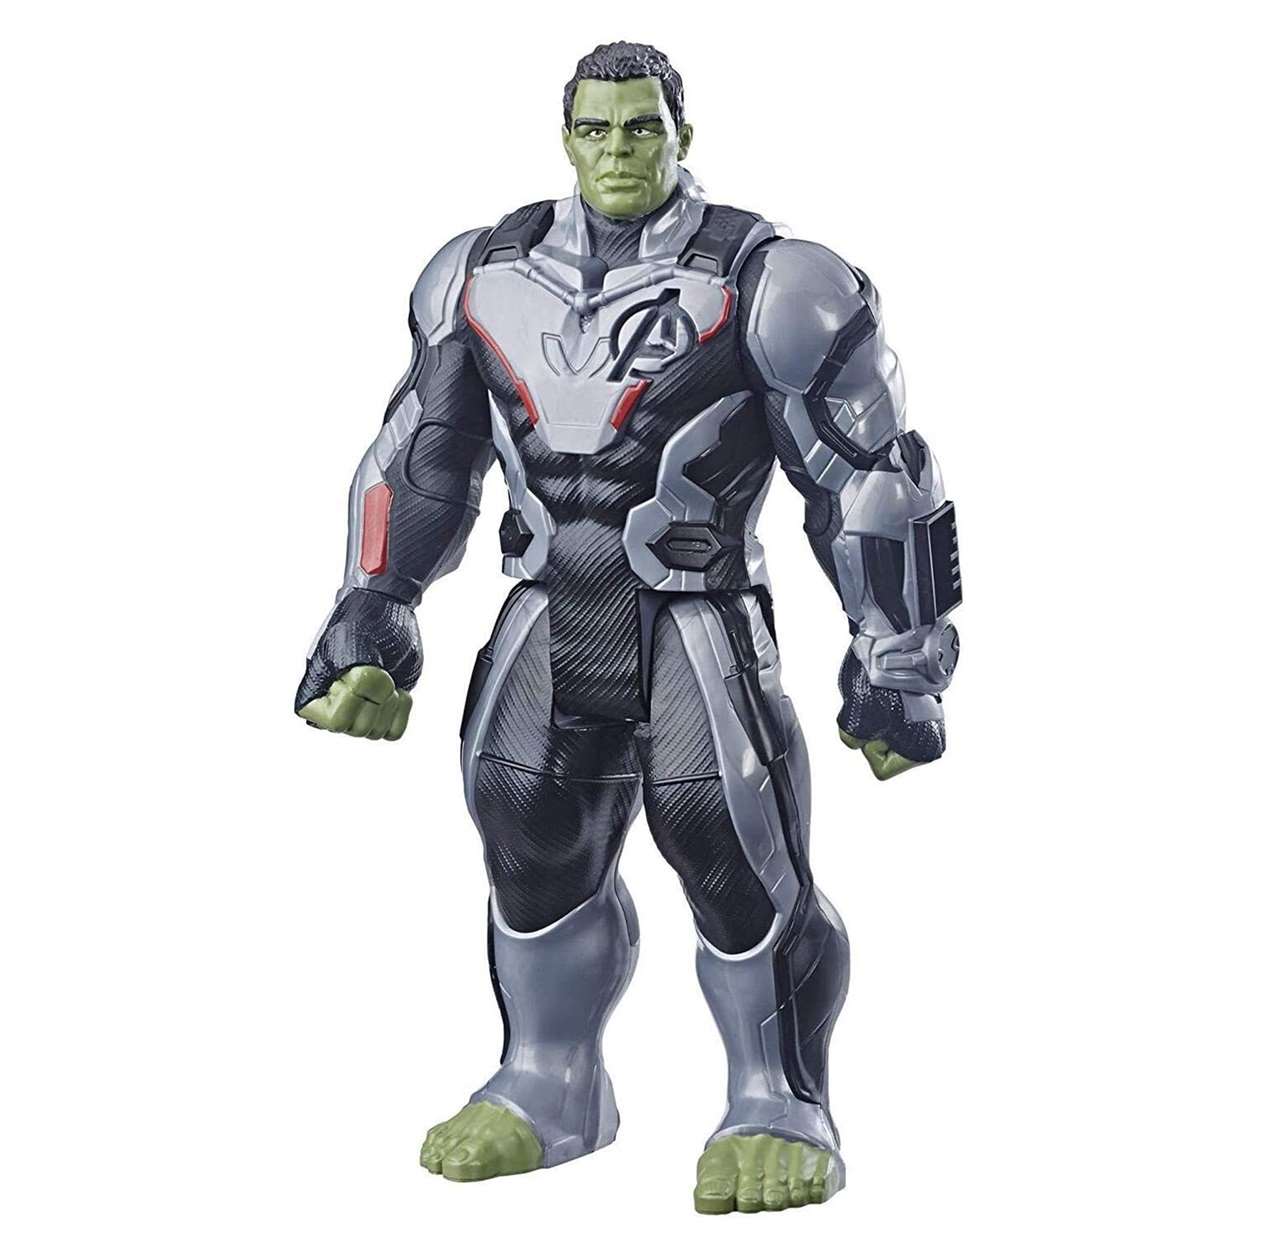 Hulk + Ronin Figuras Marvel Avengers End Game Power FX Titan Hero